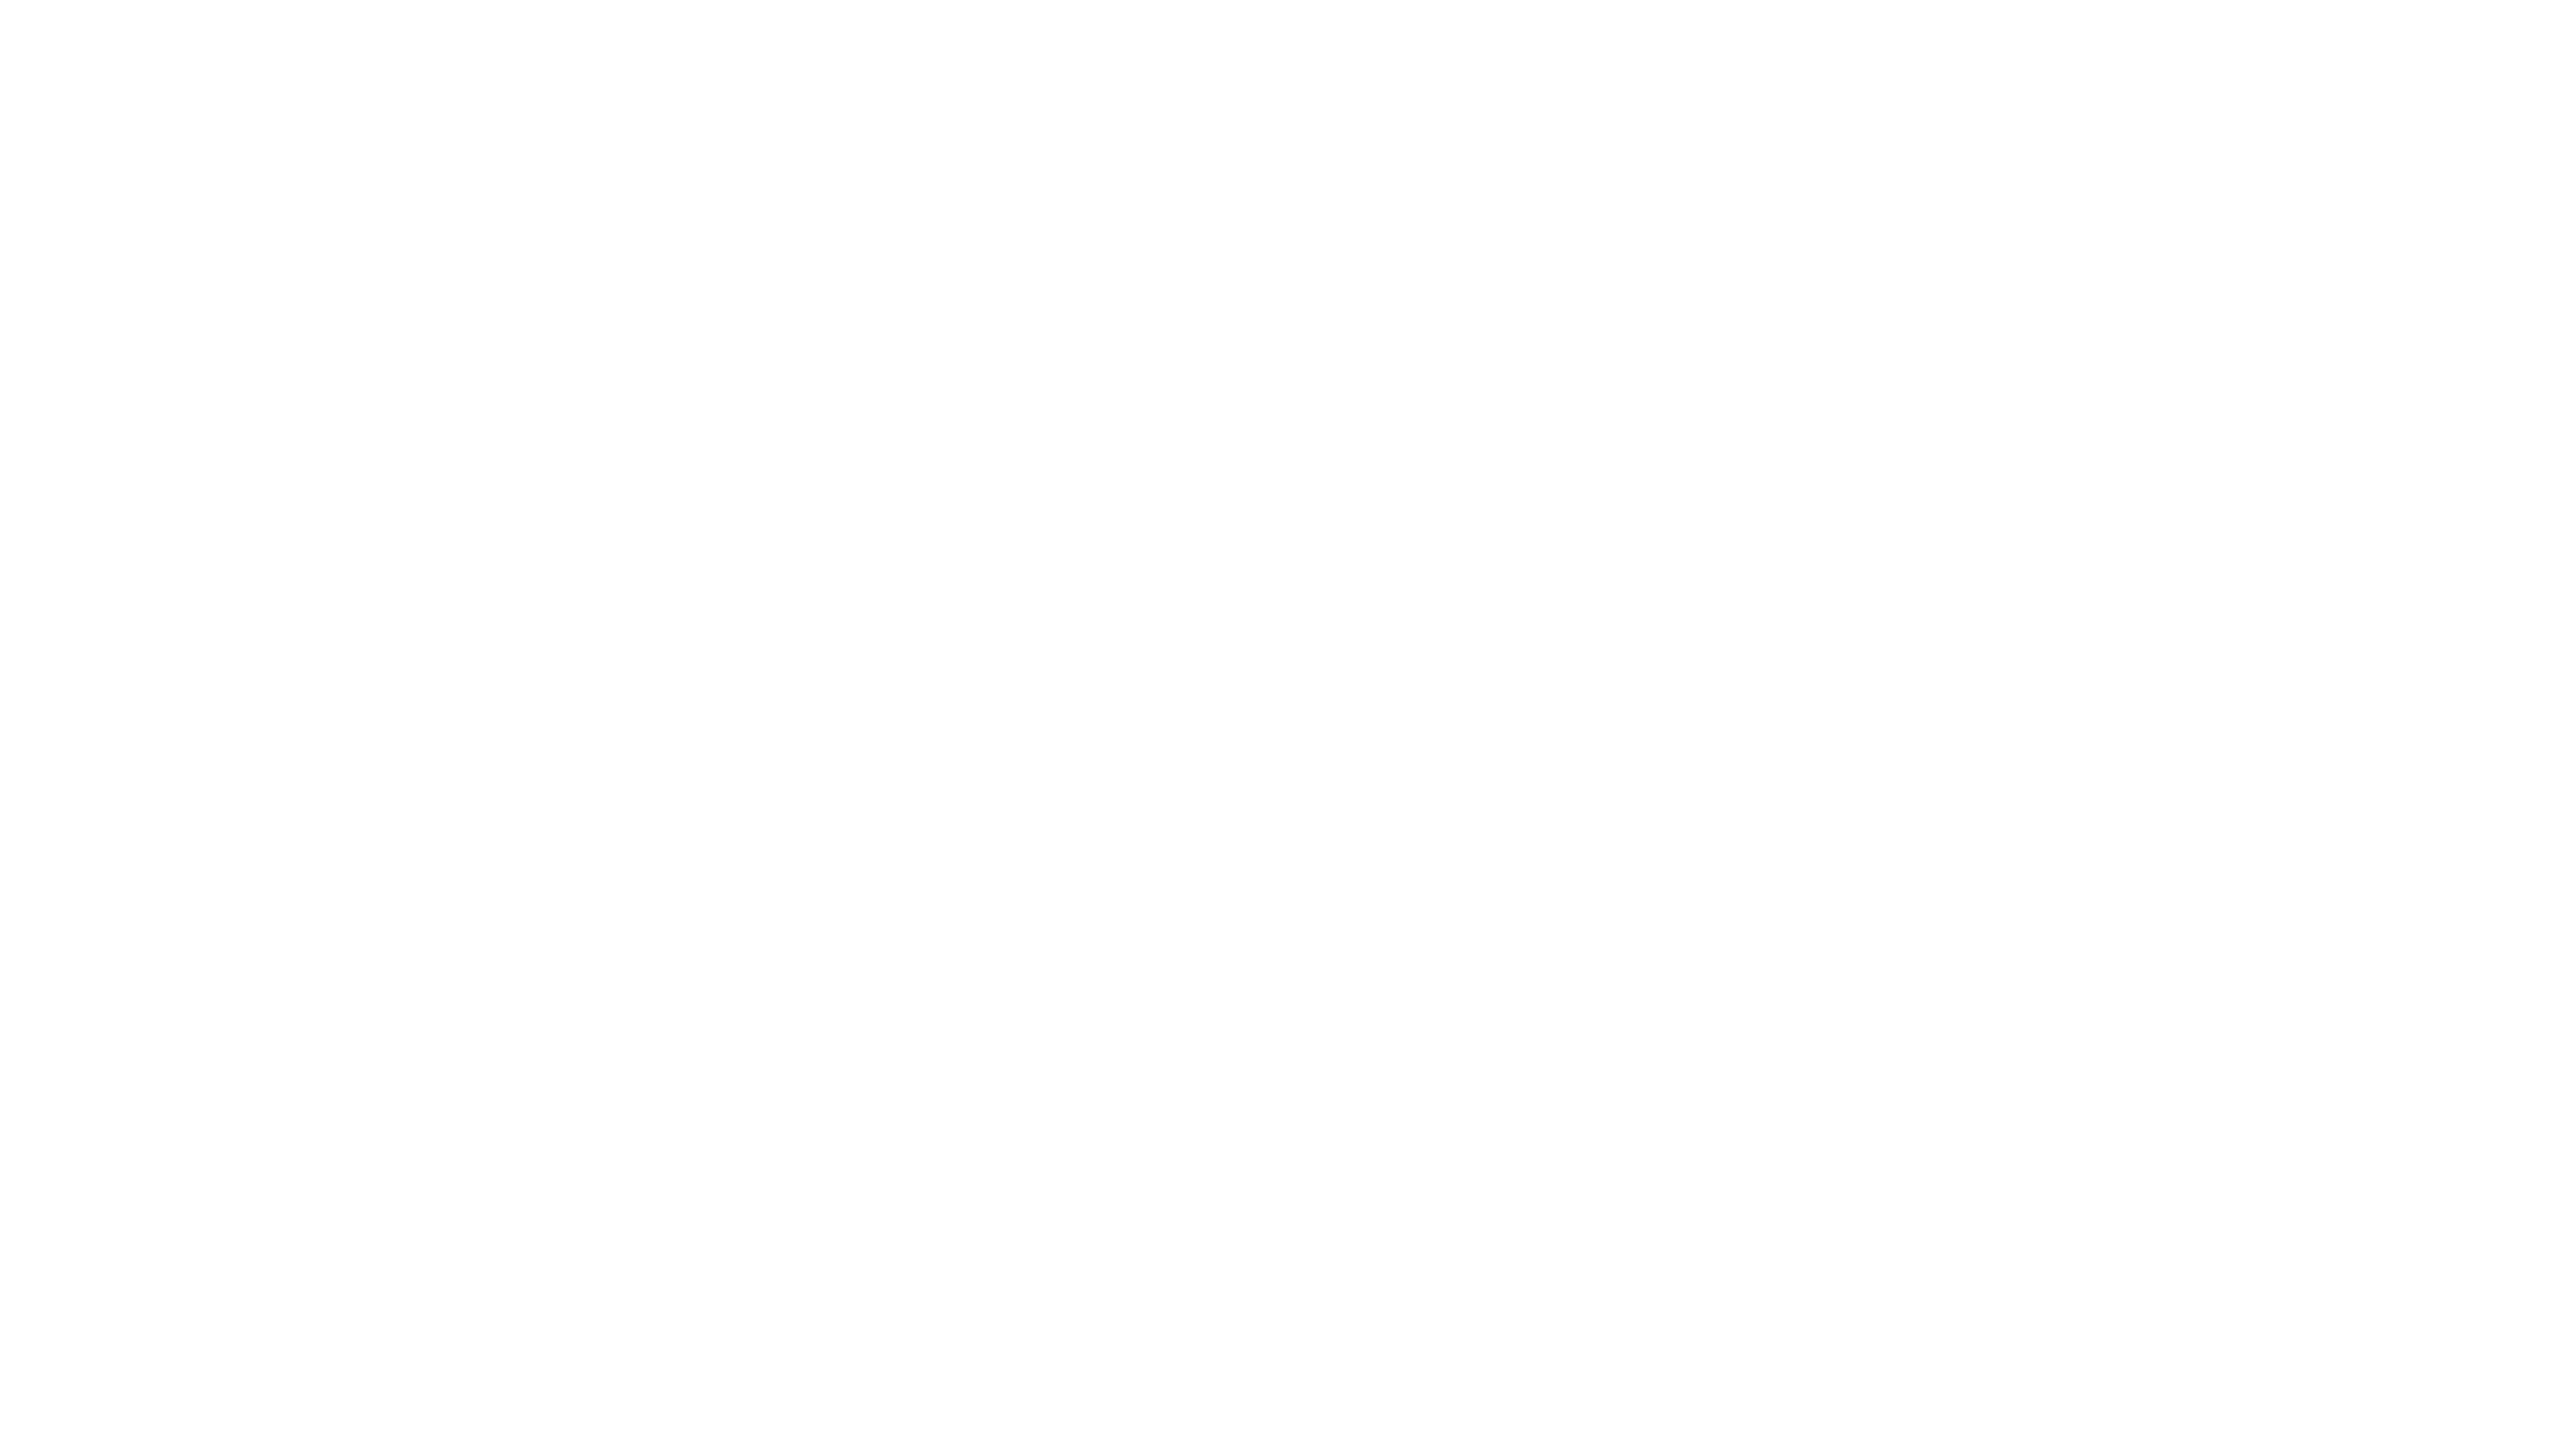 Renovate-FINAL-Logos-5.4_-Renovate-Landscape-2-White